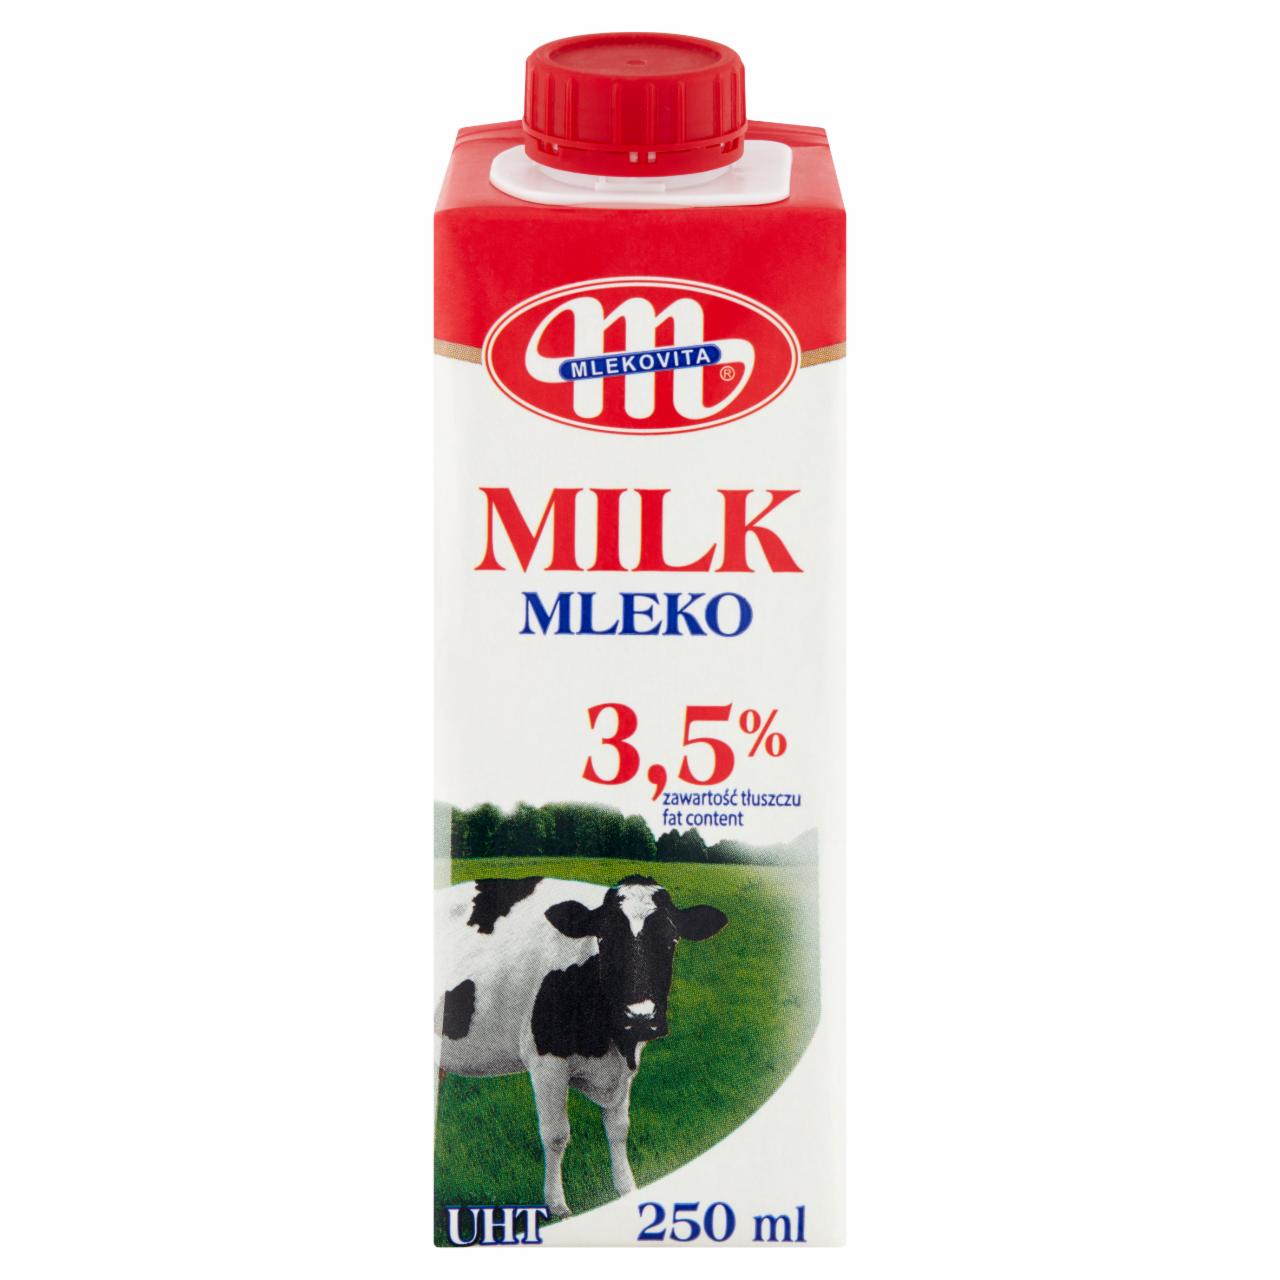 Photo - Mlekovita UHT Milk 3.5% 250 ml